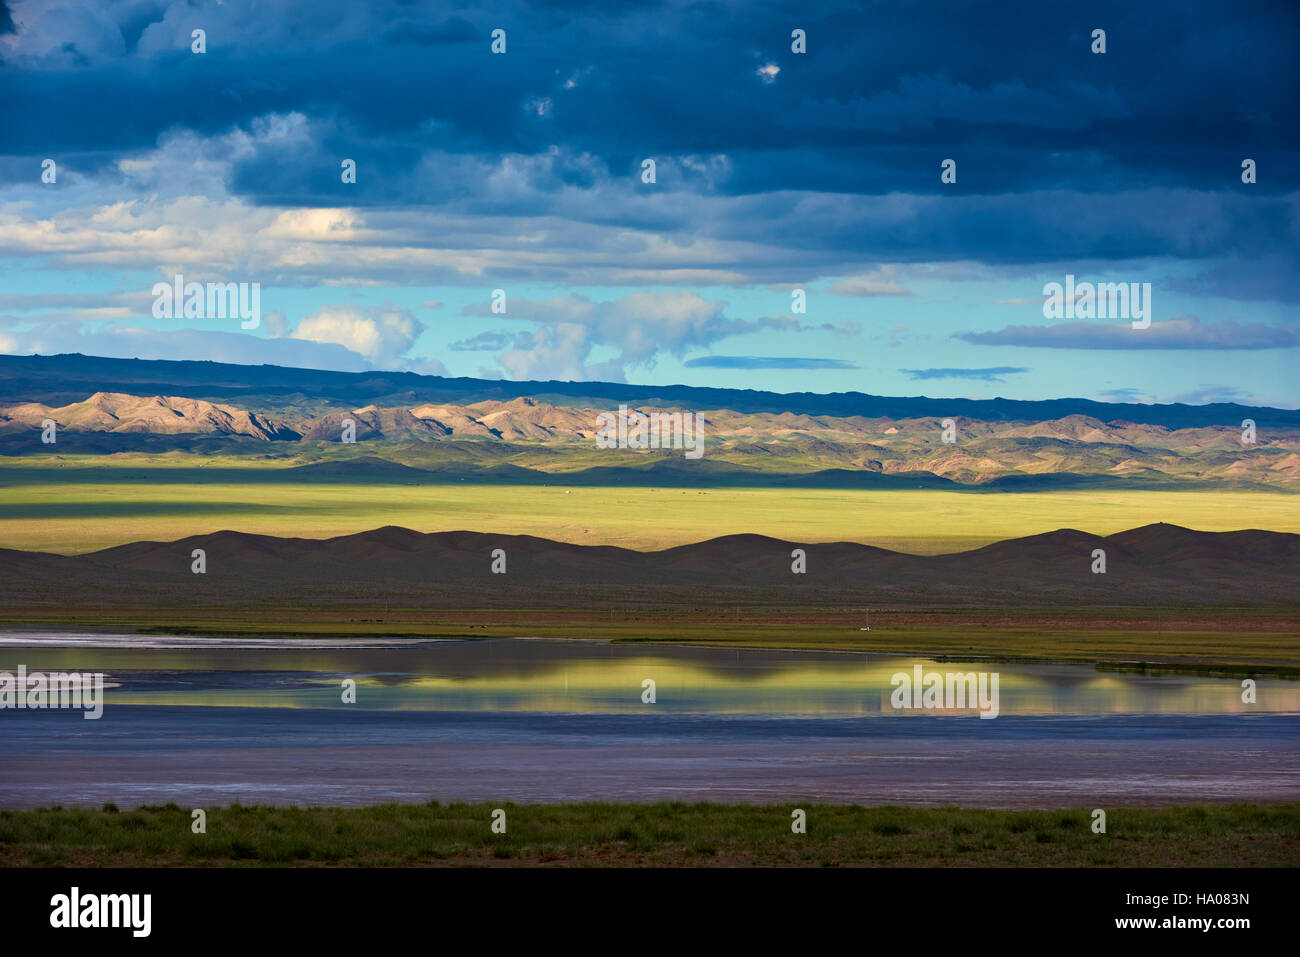 La Mongolie, Gobi-Altay, province de l'ouest de la Mongolie, du paysage dans la steppe Banque D'Images